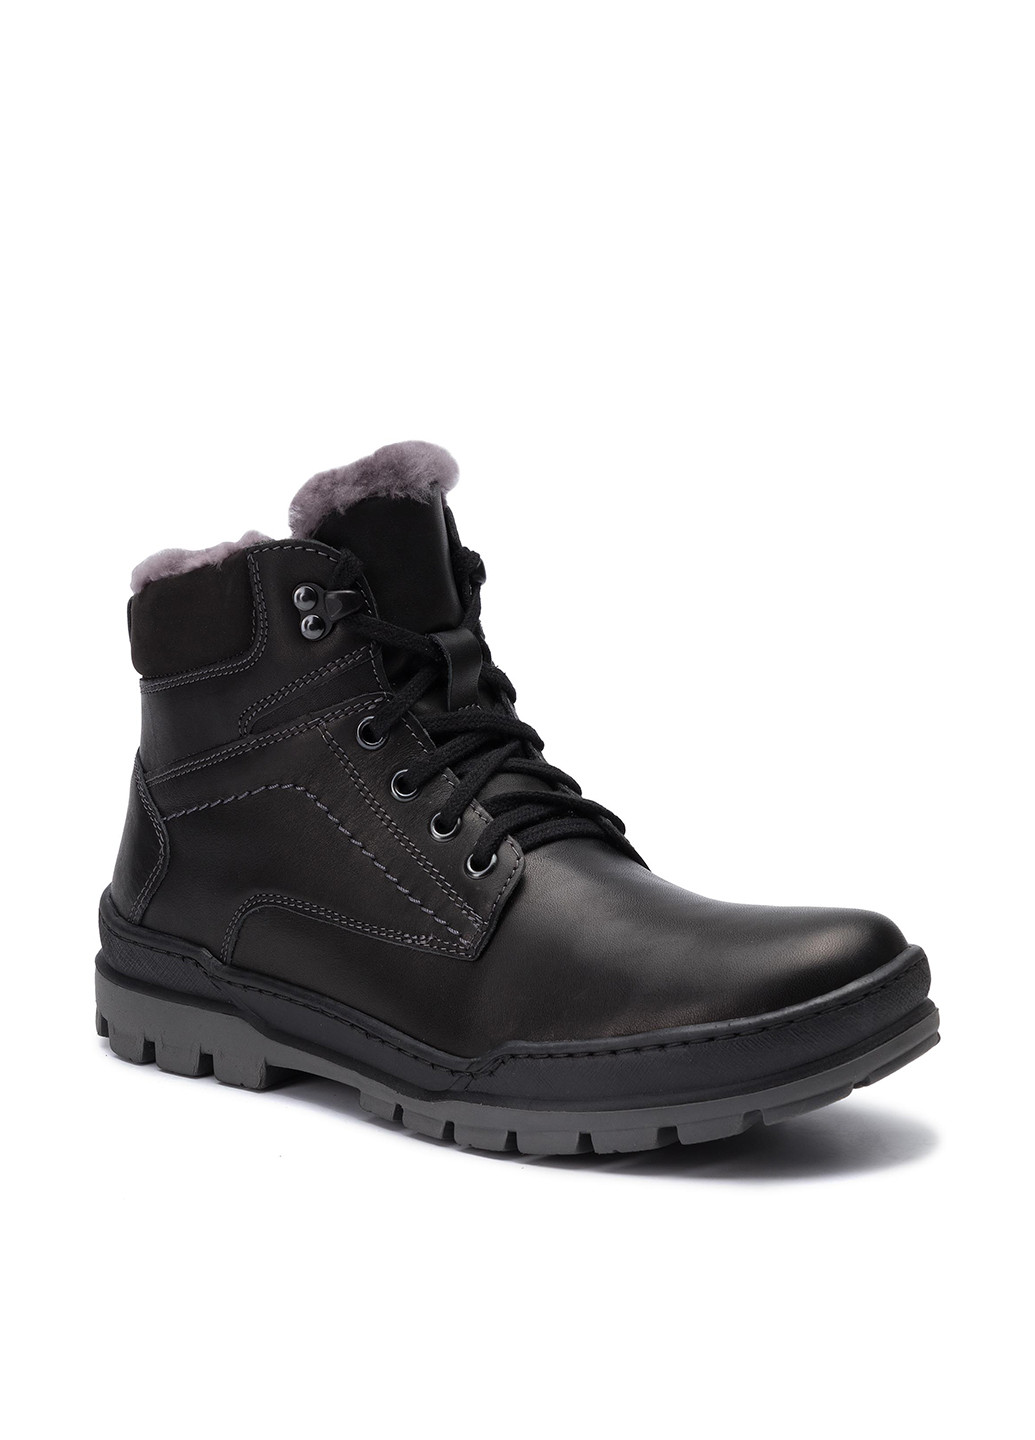 Черные зимние черевики  for men sm-9385 хайкеры Lasocki